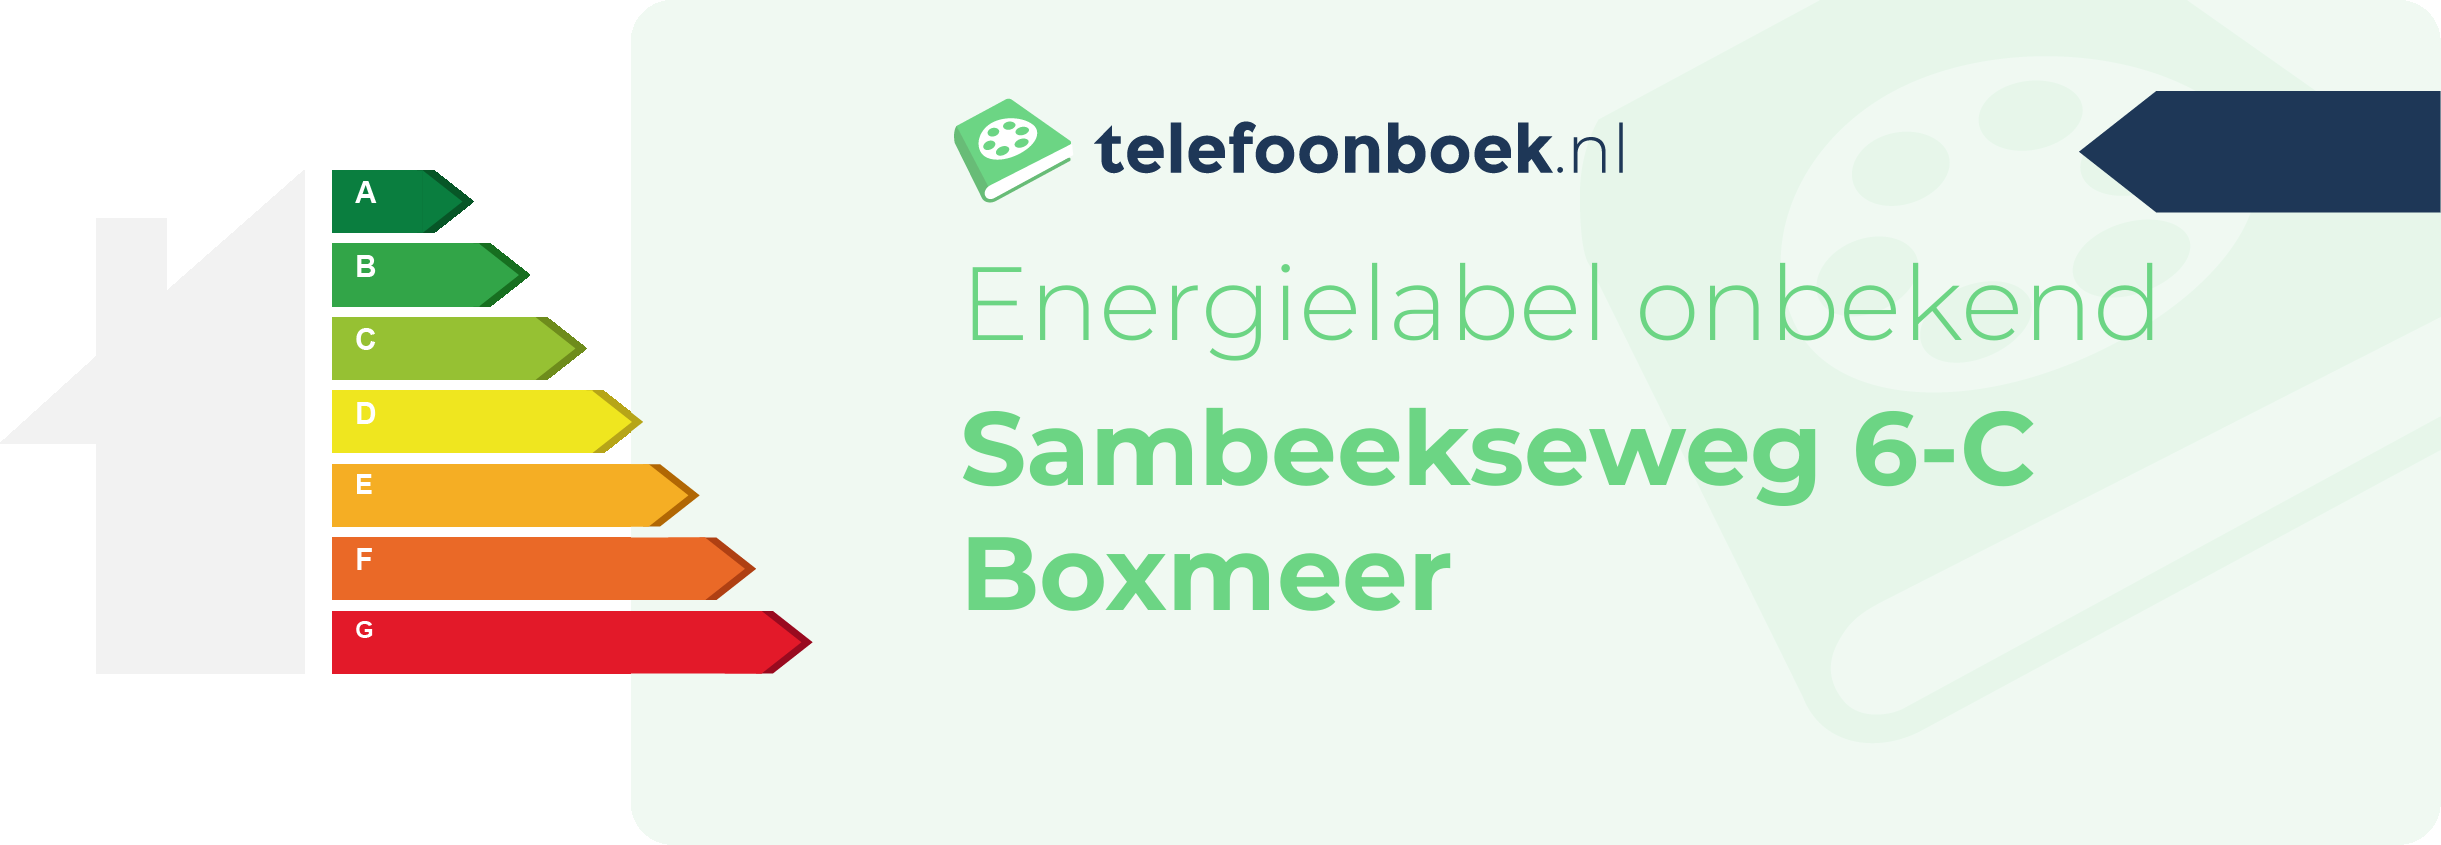 Energielabel Sambeekseweg 6-C Boxmeer